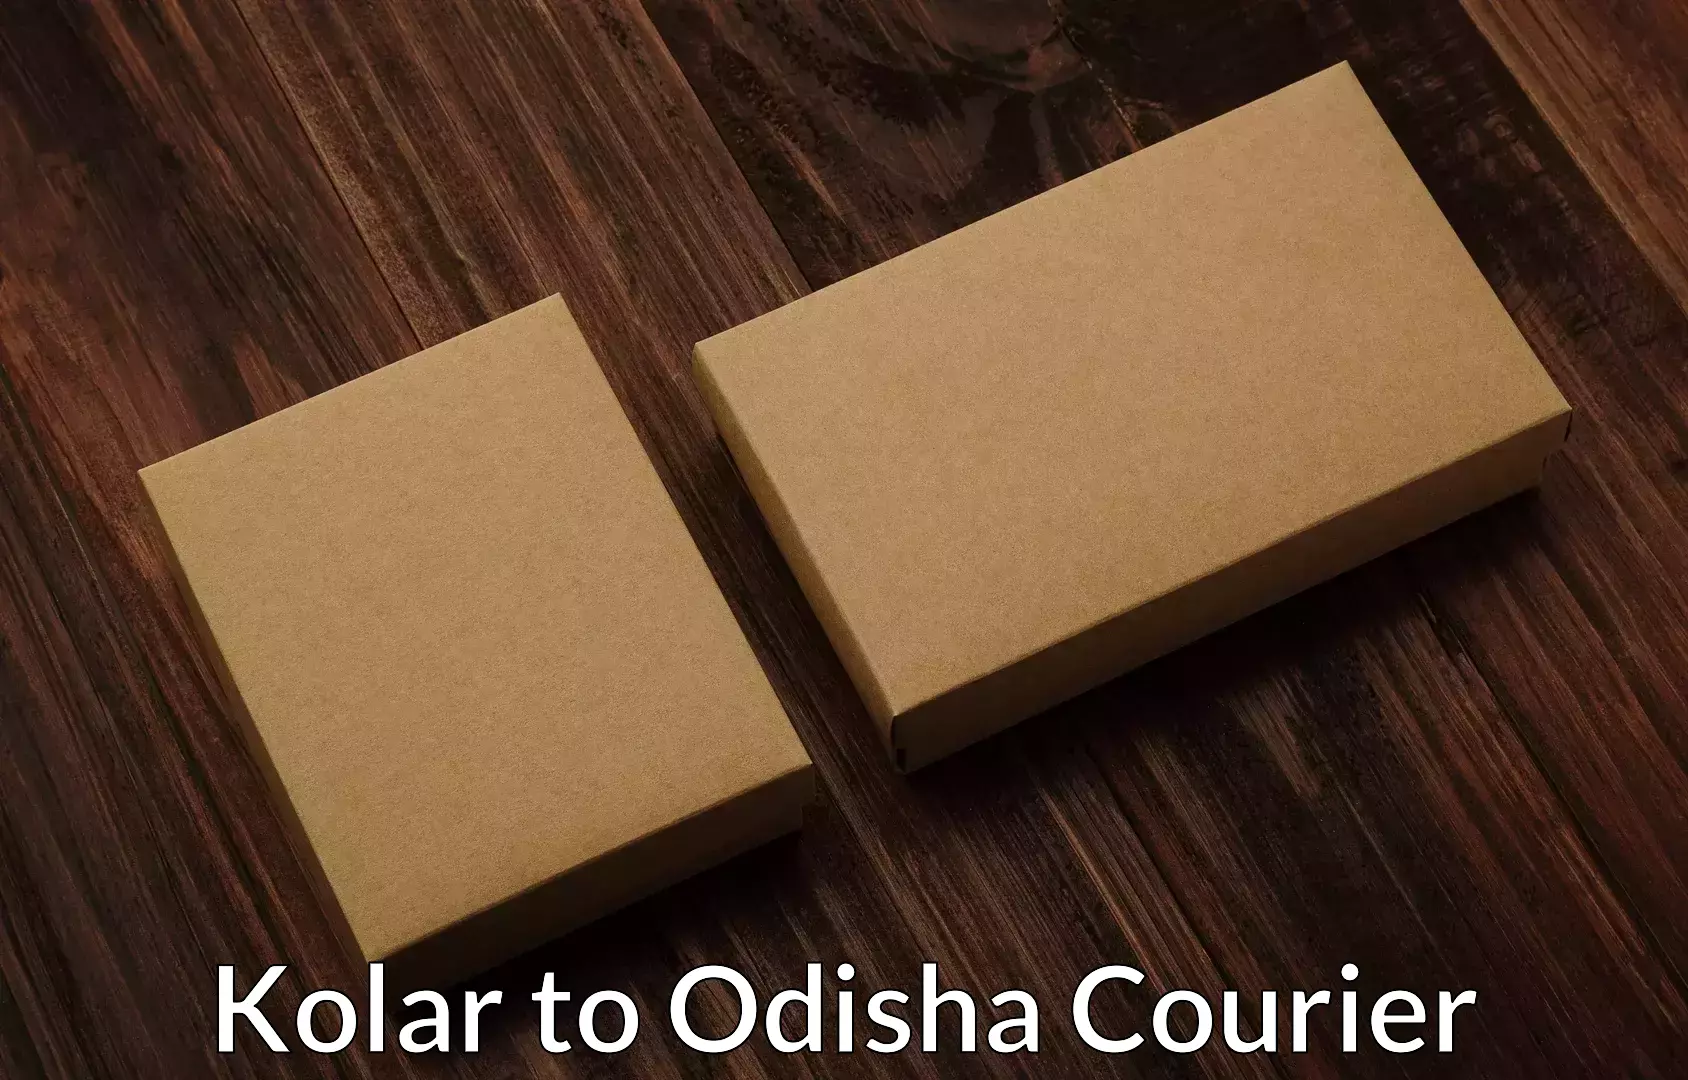 Efficient household movers Kolar to Odisha